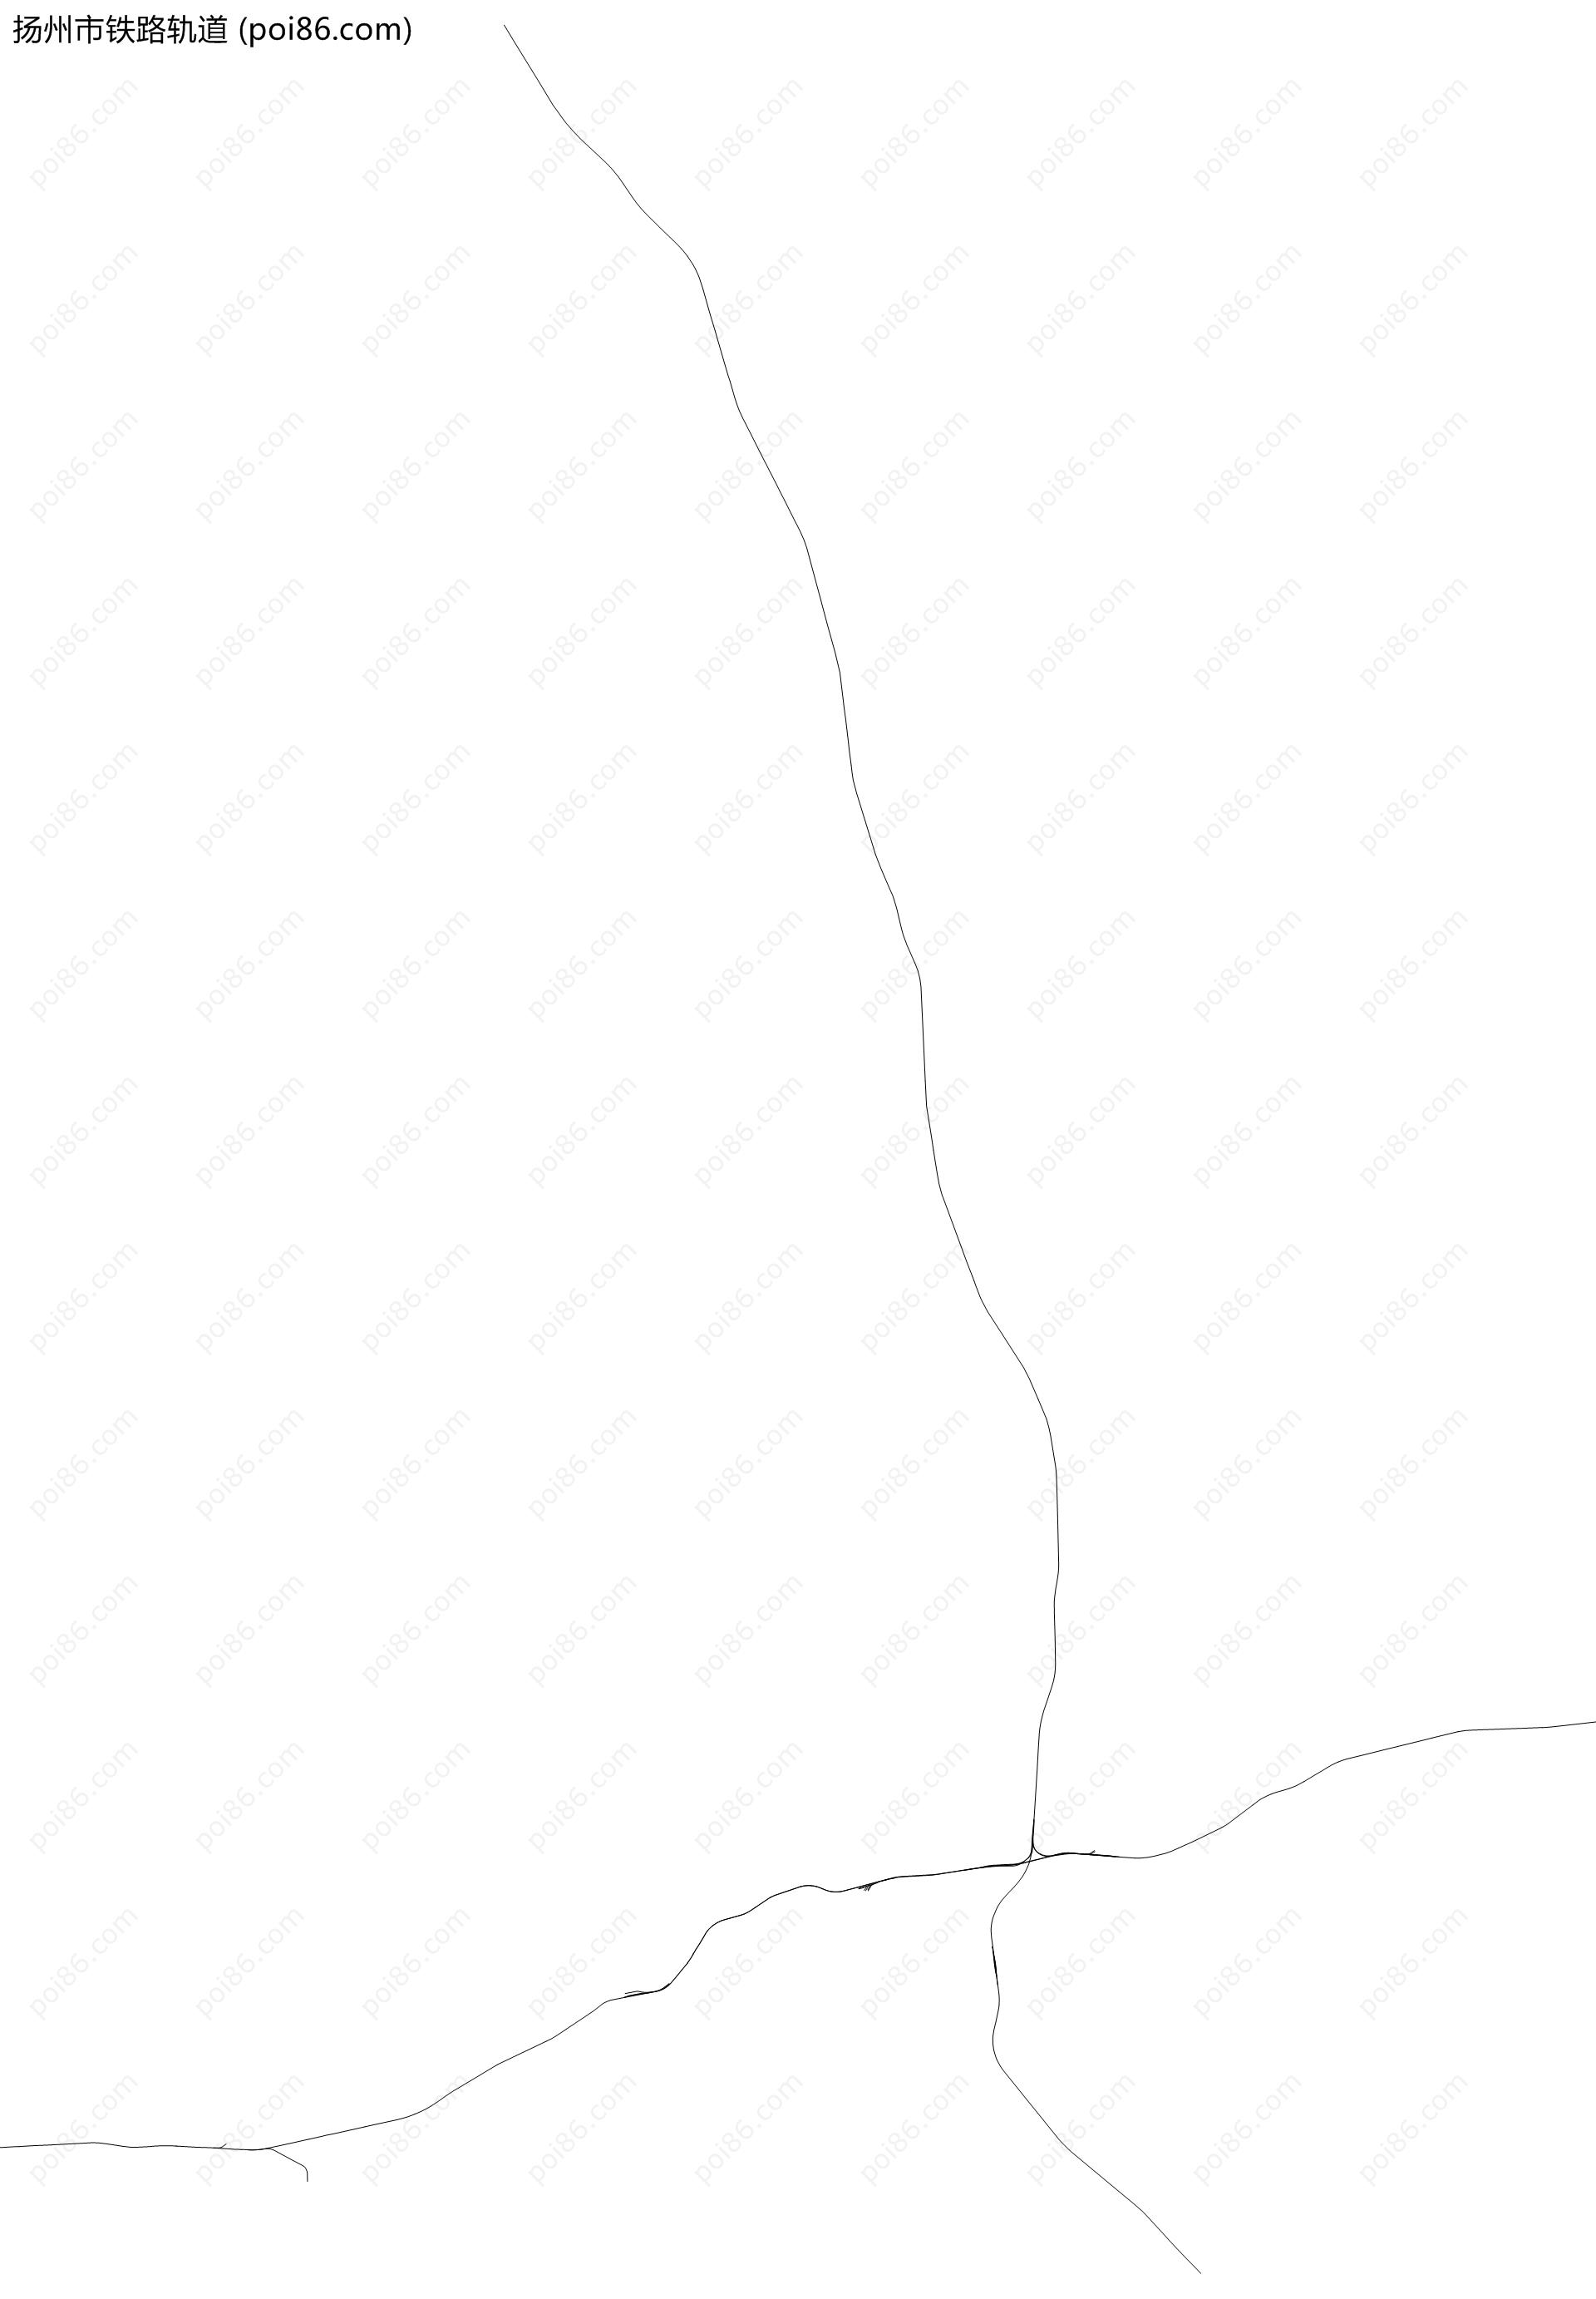 扬州市铁路轨道地图